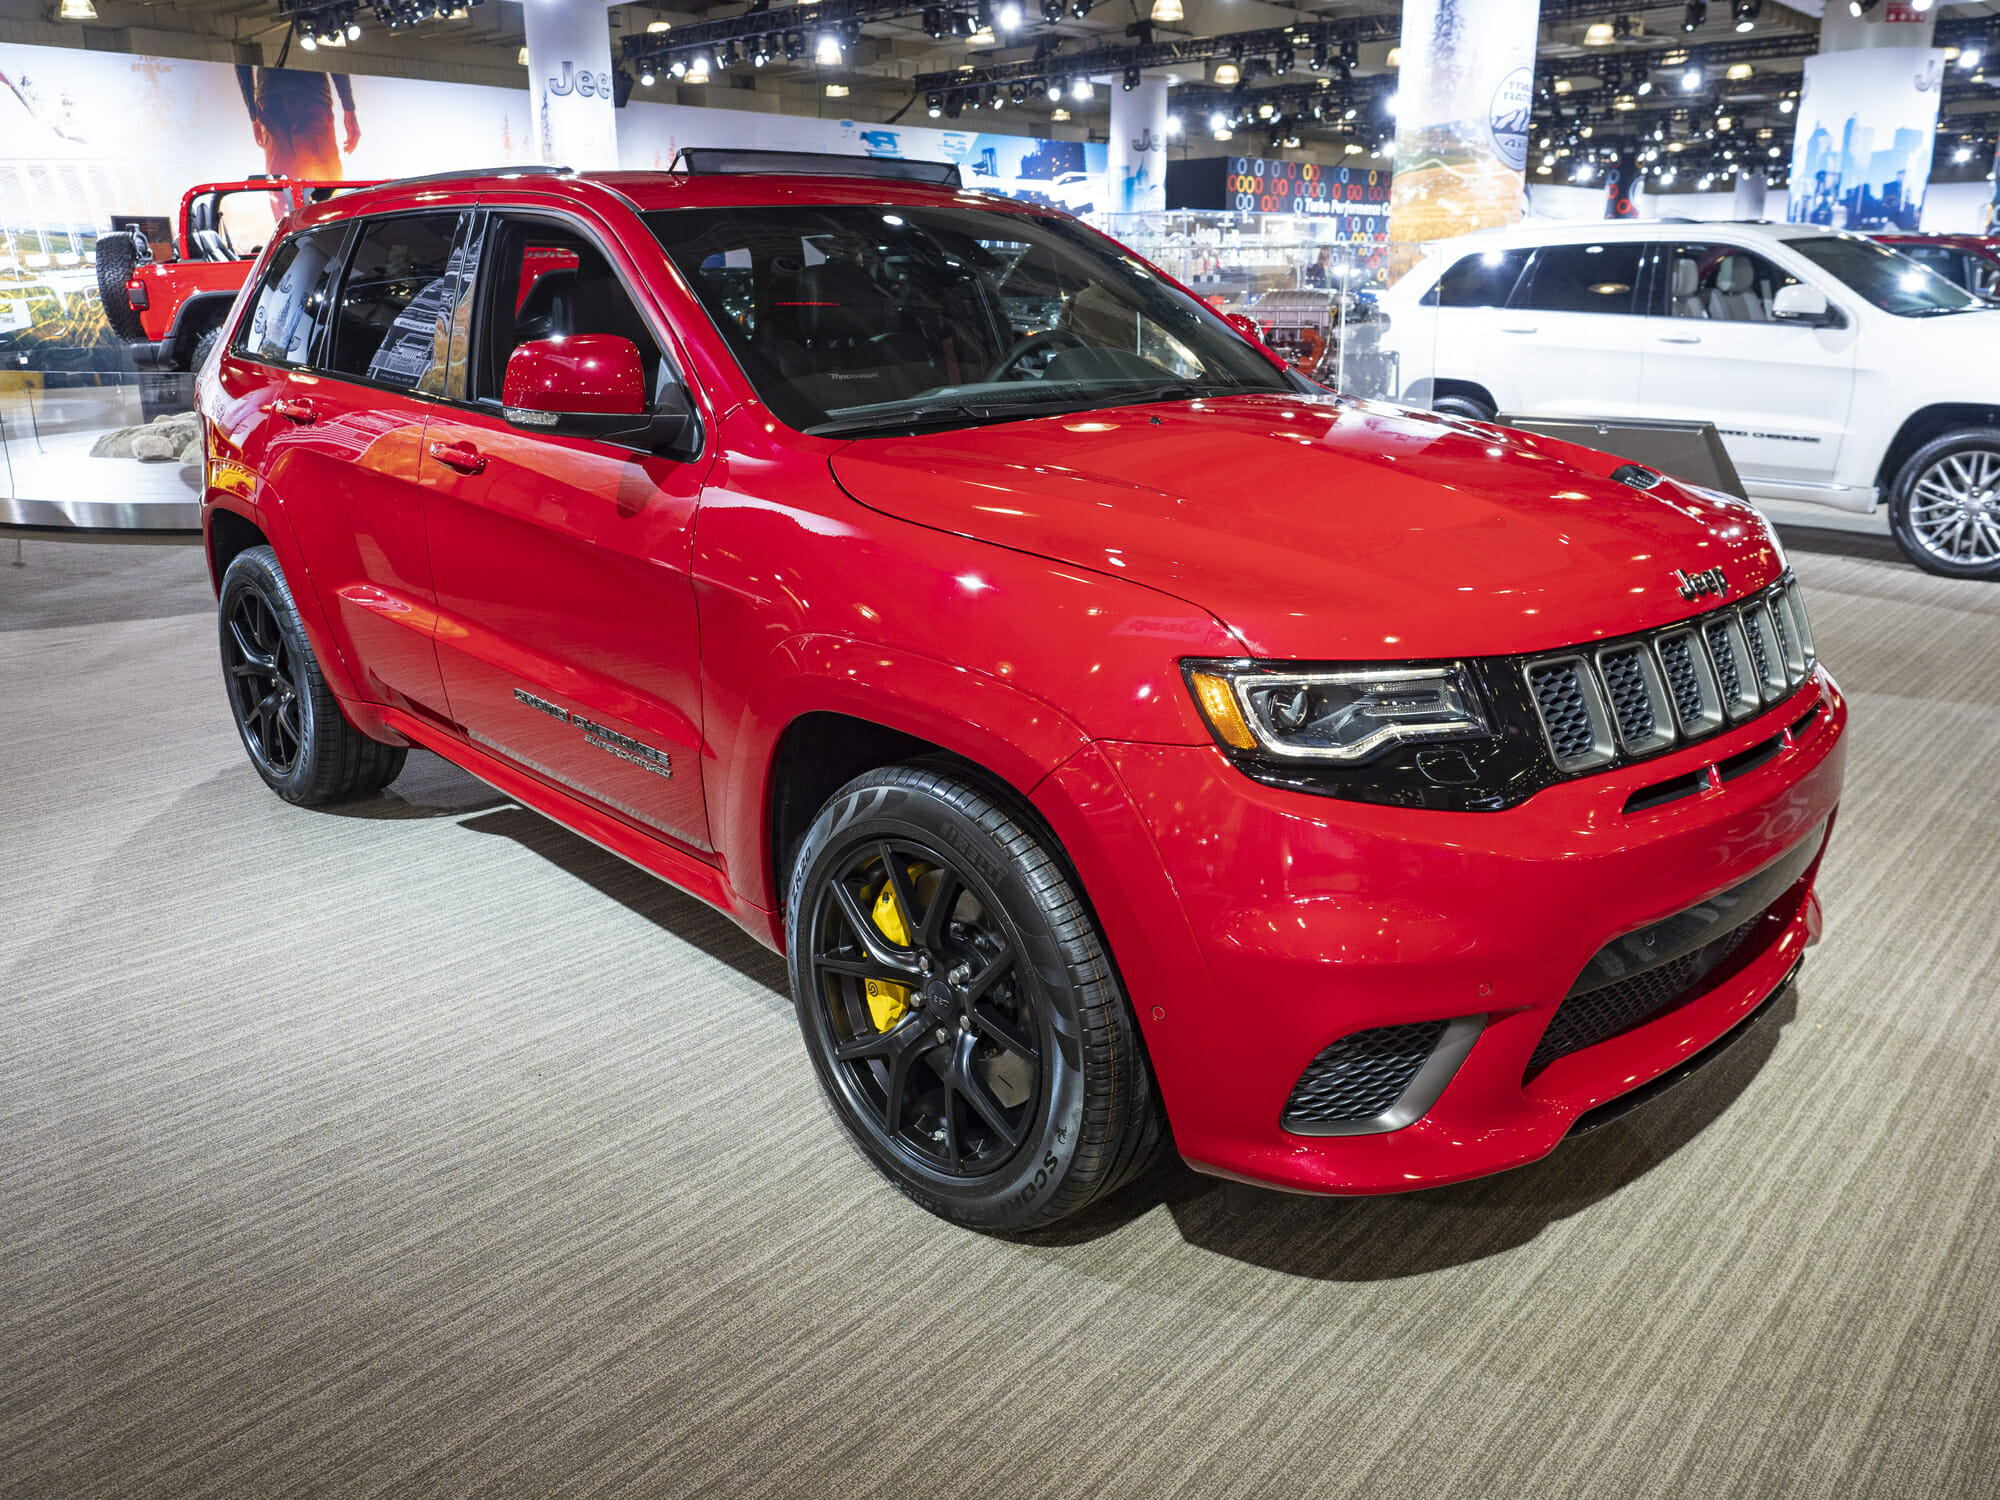 Jeep Trackhawk rojo en el salón del automóvil - Historia del vehículo